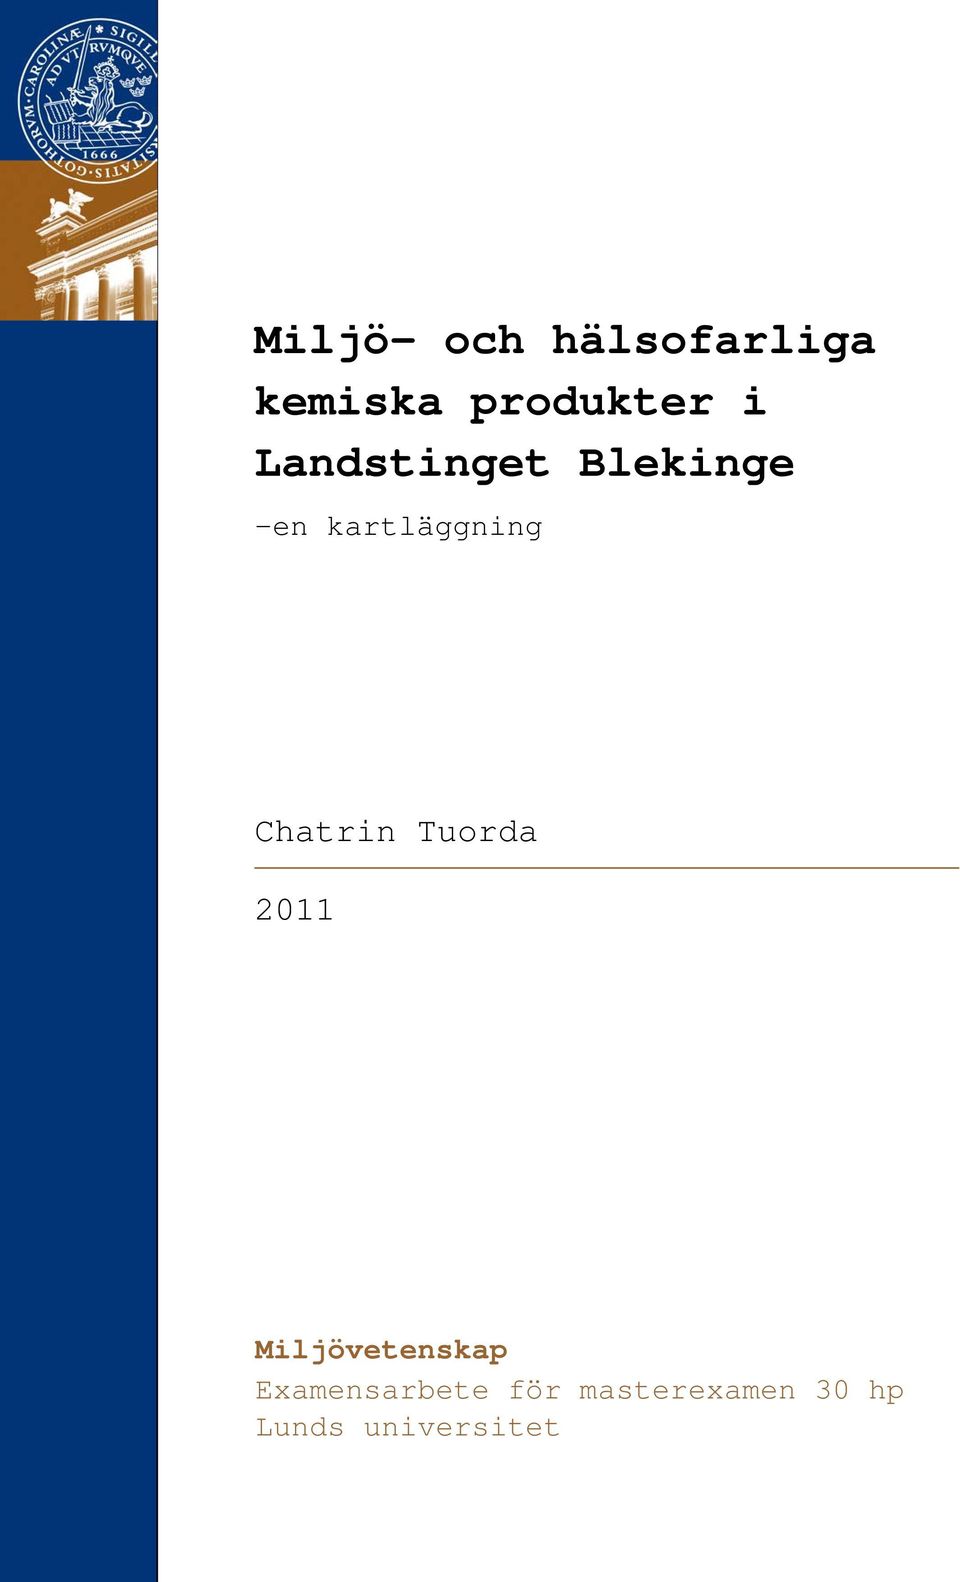 Chatrin Tuorda 2011 Miljövetenskap